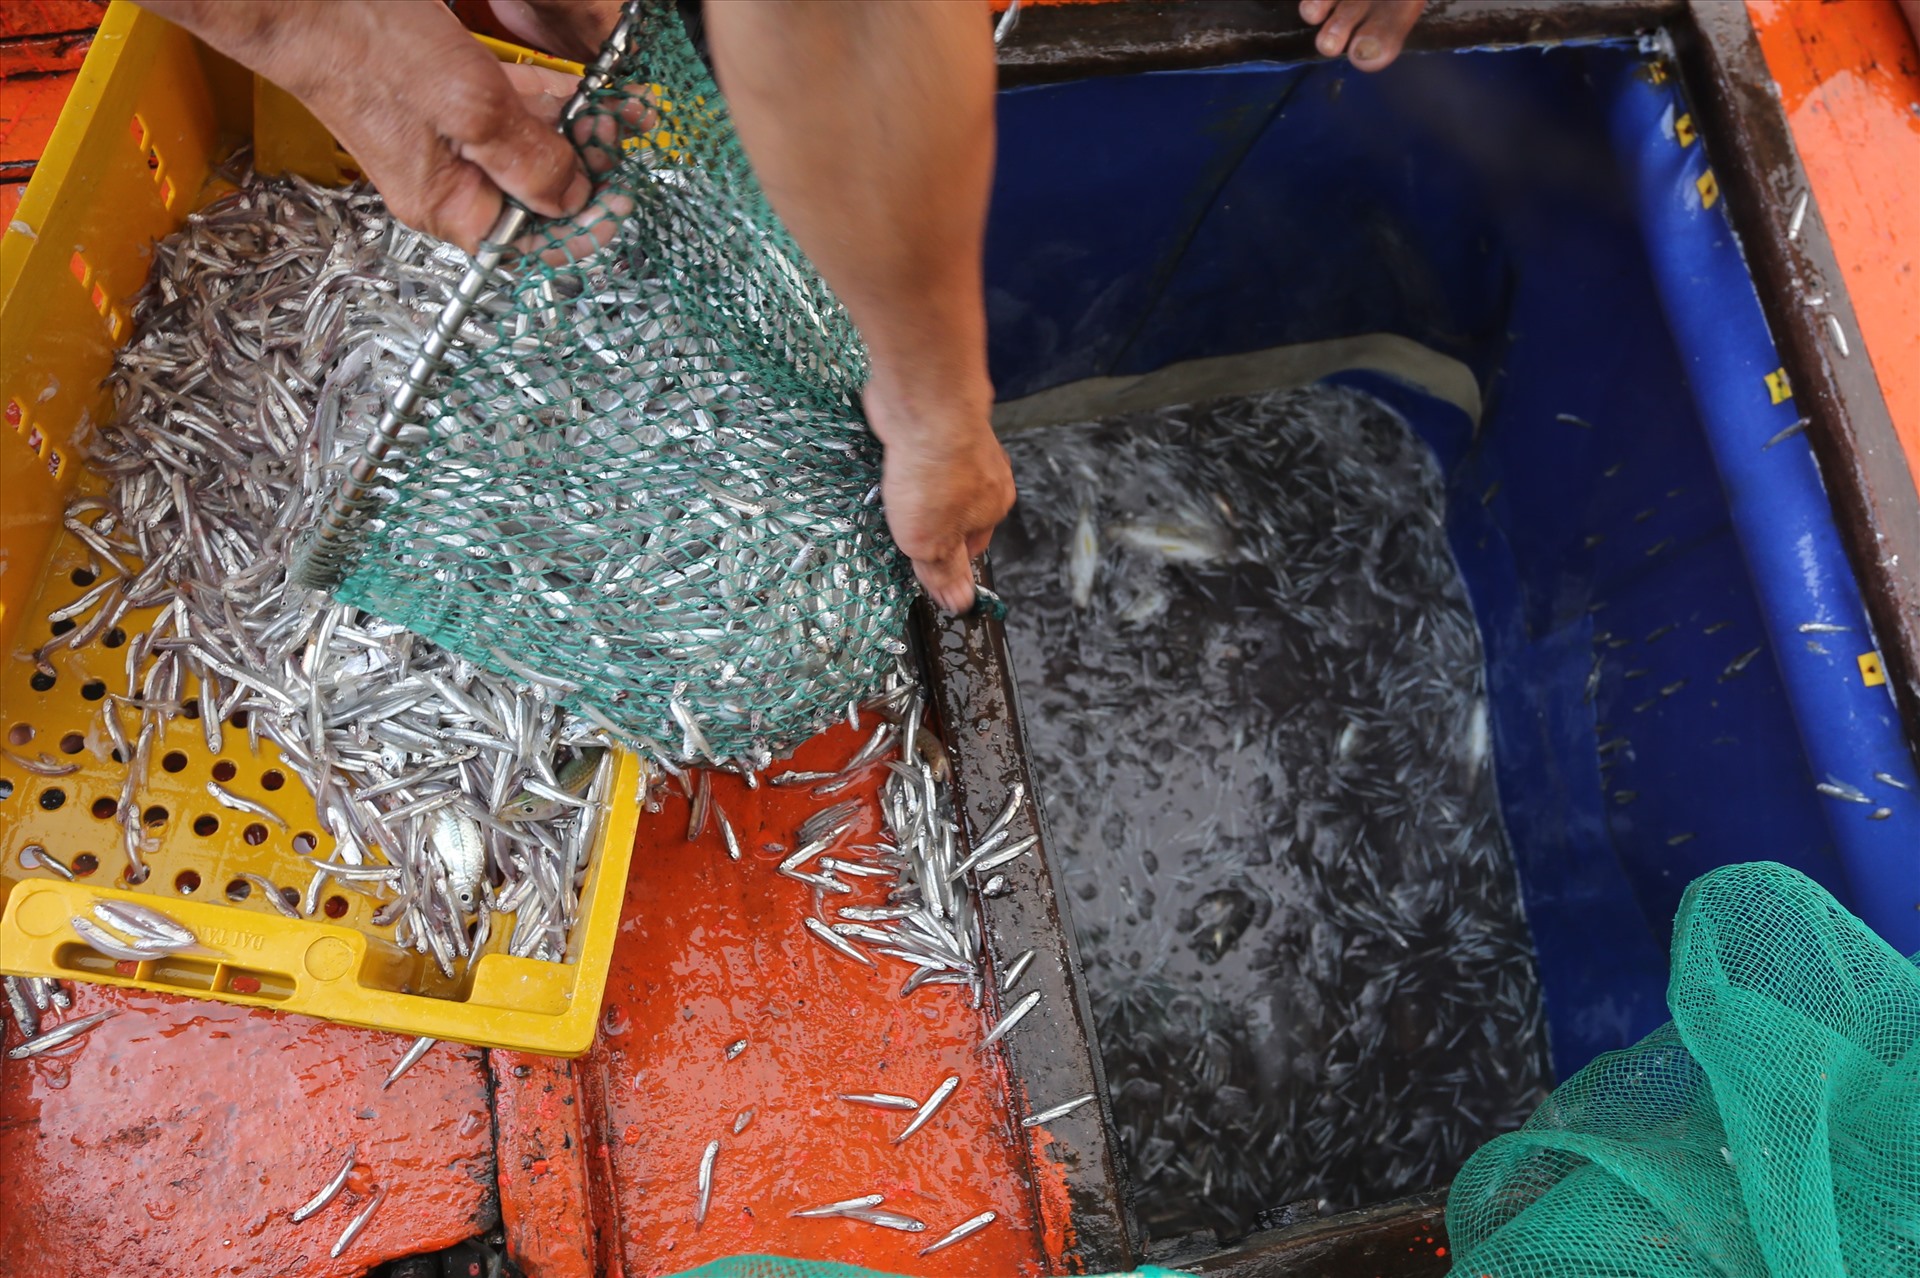 Hầm chứa tàu Qna 94457 do ông Đăng Văn Sơn (trú xã Bình Minh, huyện Thăng Bình) làm chủ chất đầy cá cơm. Họ dùng vợt xúc đổ vào khay nhựa cho ráo nước để dễ dàng vận chuyển lên bờ.